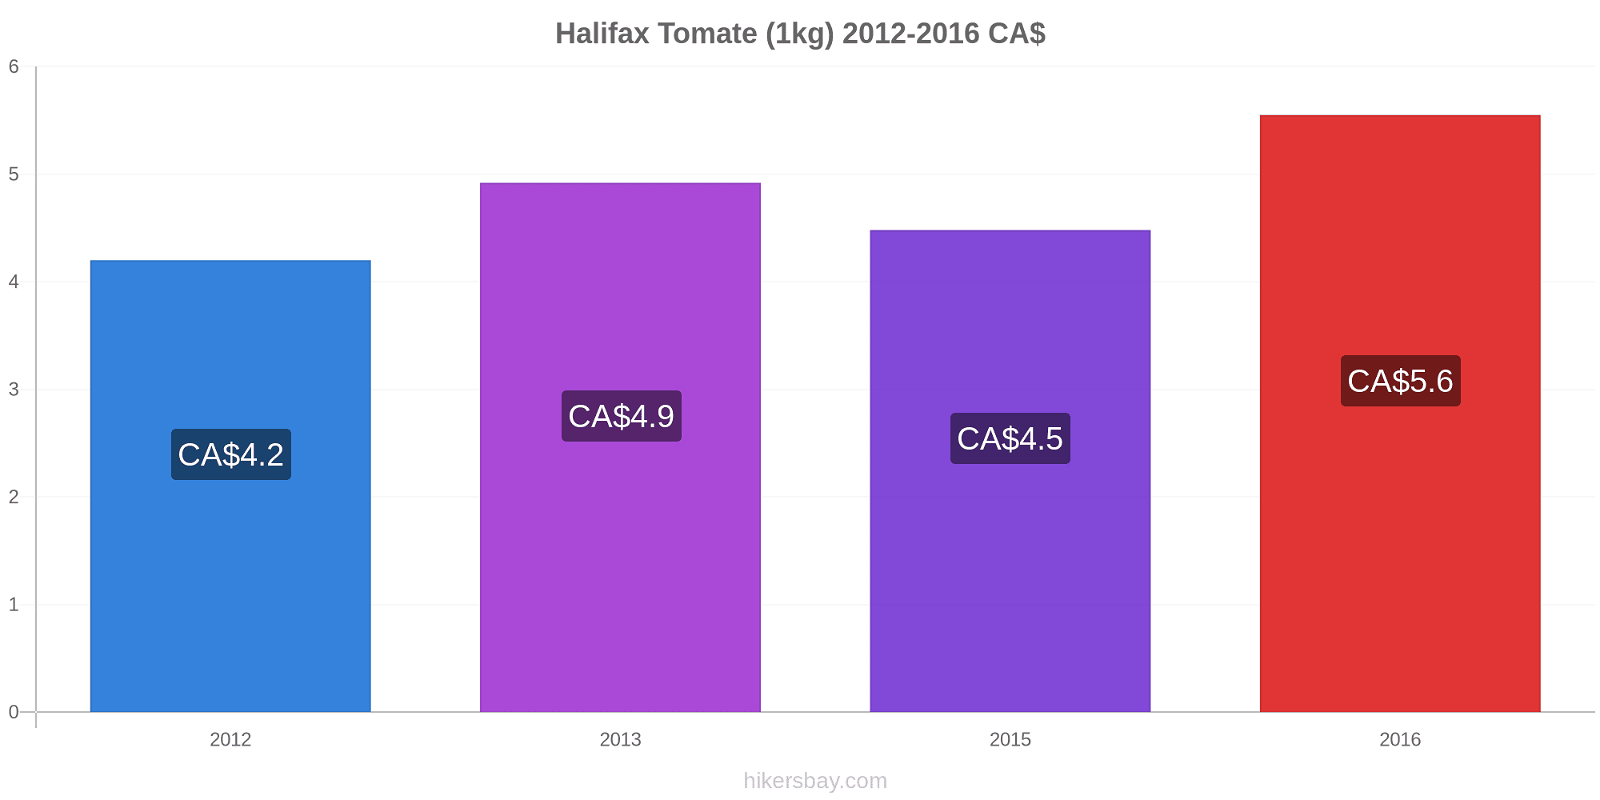 Halifax cambios de precios Tomate (1kg) hikersbay.com